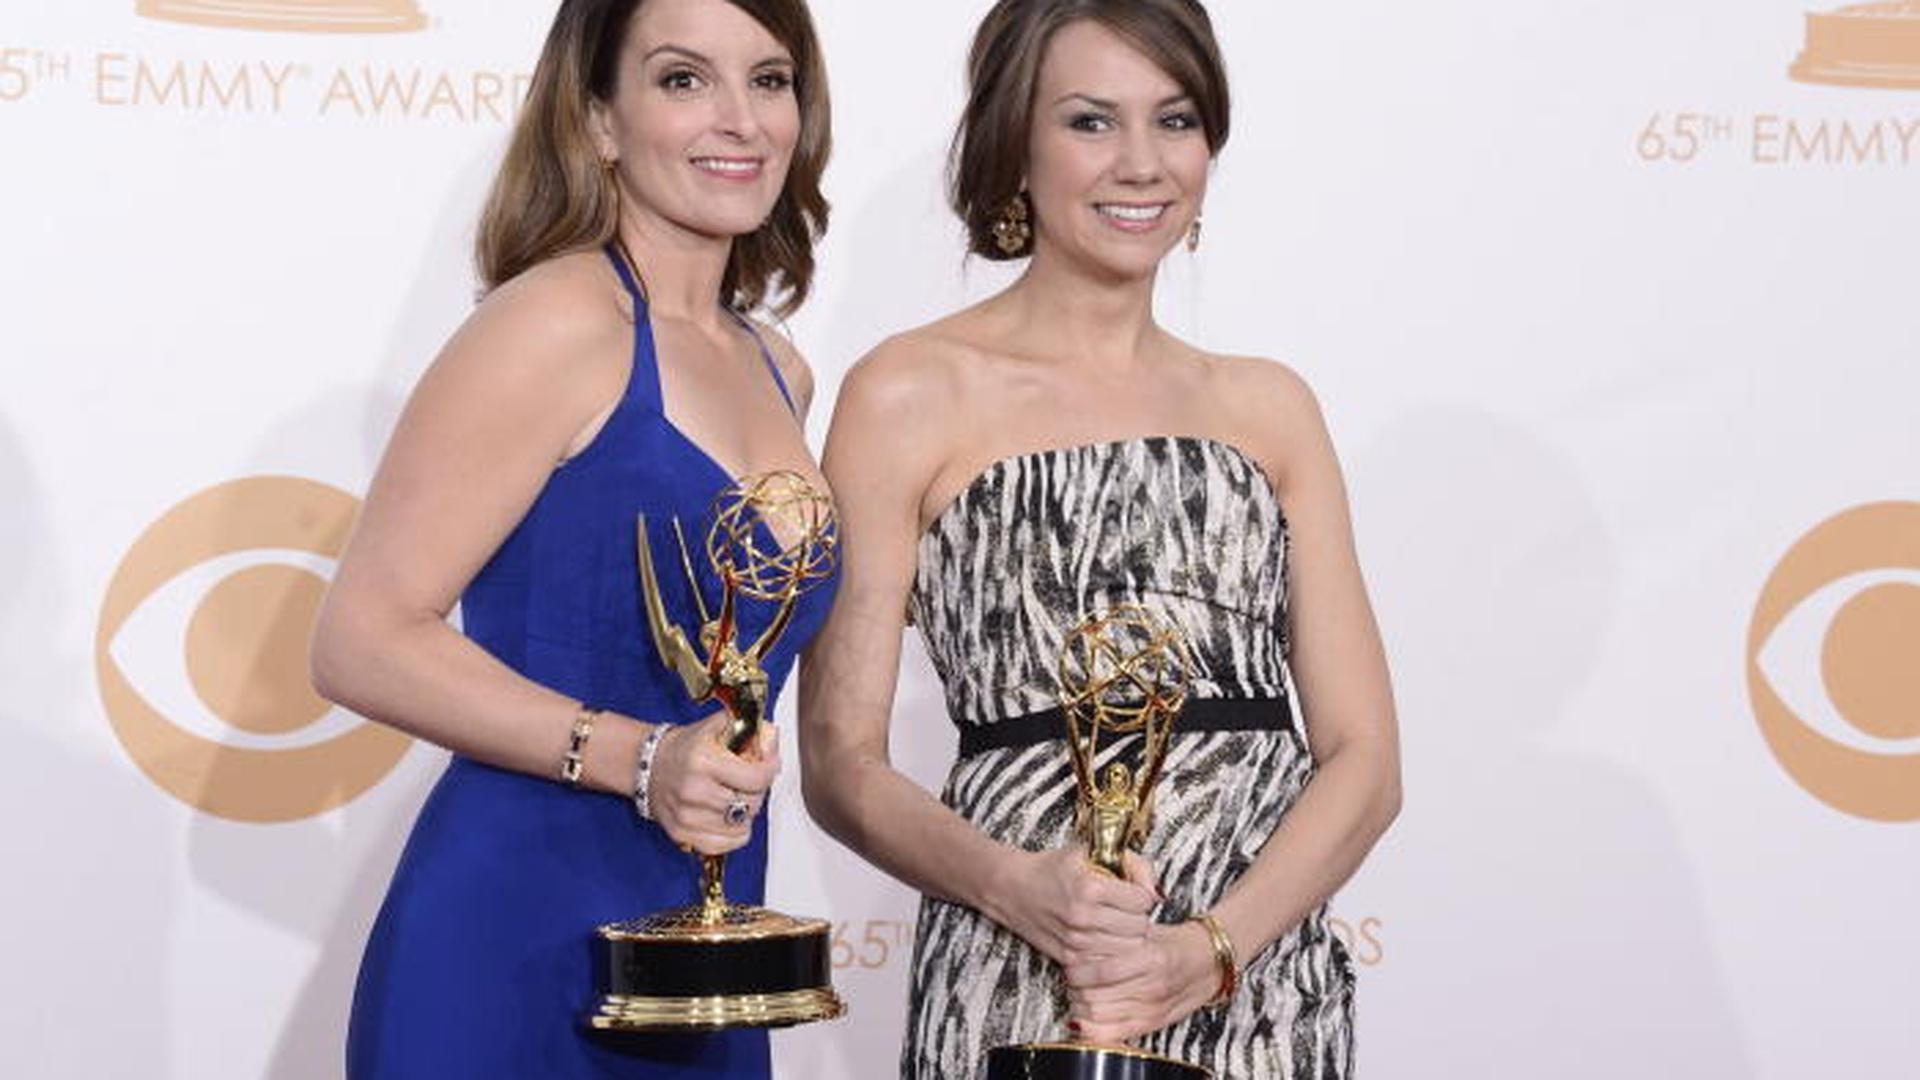 Ainda nesta categoria de comédia, Tina Fey venceu o Emmy de melhor argumento com "30 Rock".